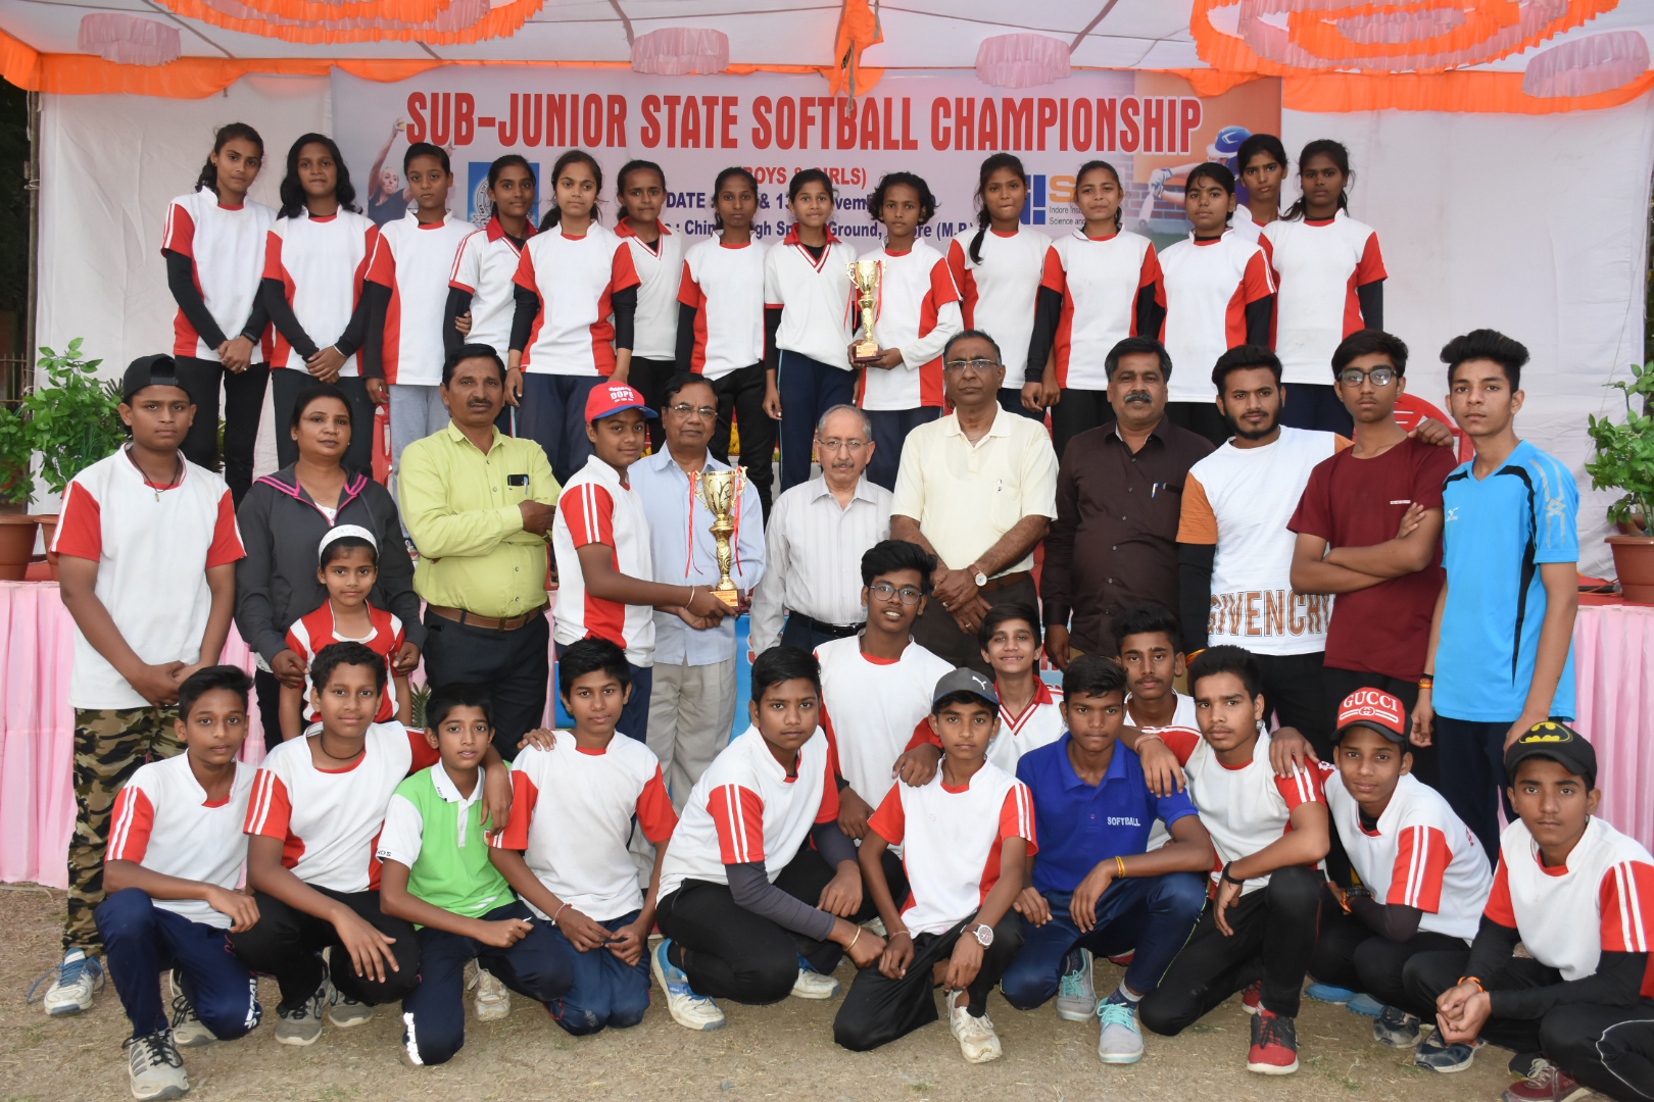 इंदौर जिले के बालकों ने जीता स्वर्ण, बालिकाओं में जीता रजत